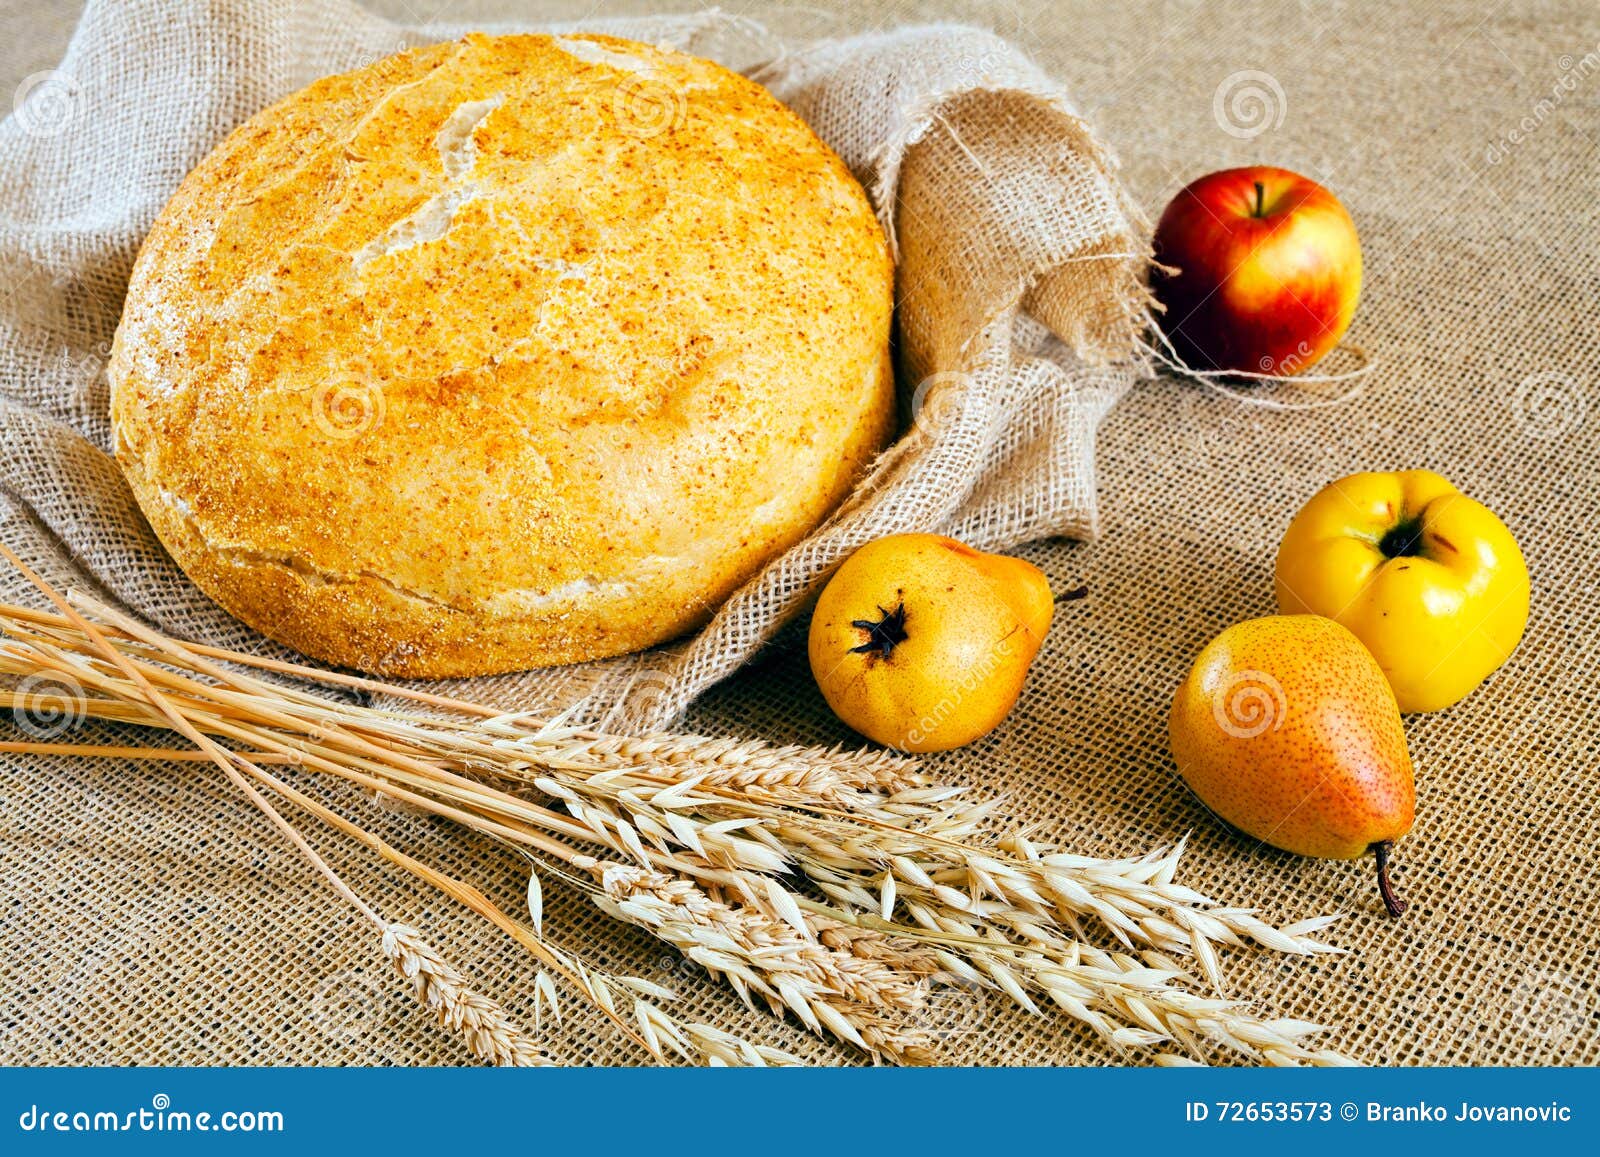 Пшеничные яблоком. Яблоки и пшеница. Хлеб пшеничный с яблоками и грушами. Пшеничные с яблоком картинка.